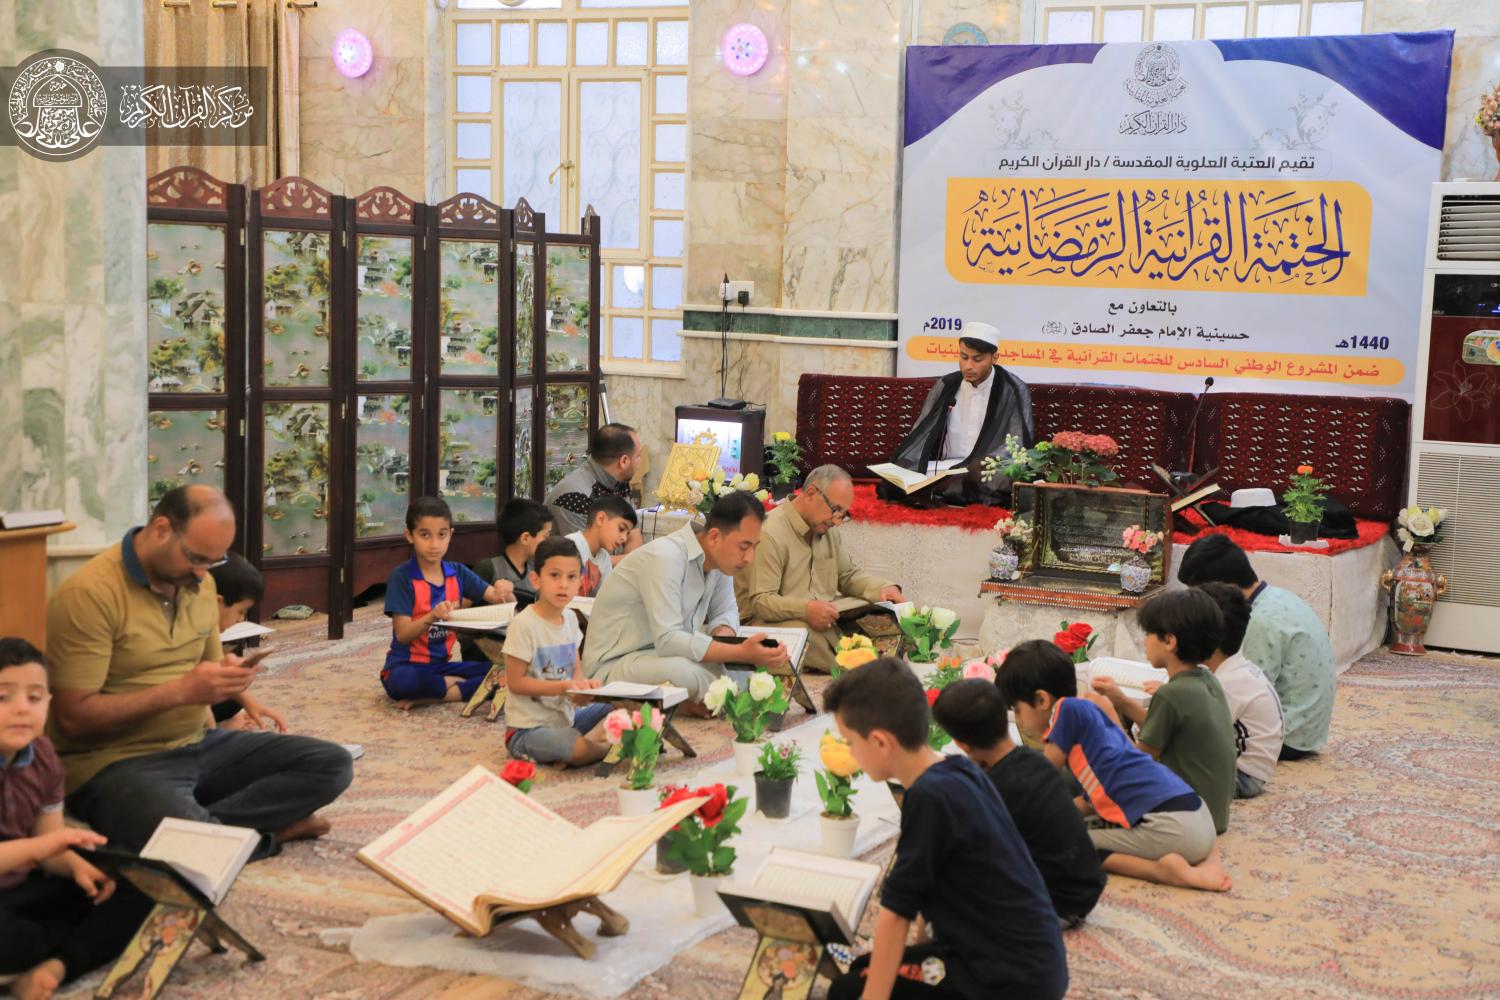  المشروع الوطني الخامس للختمات القرآنية في المساجد والحسينيات | 2019